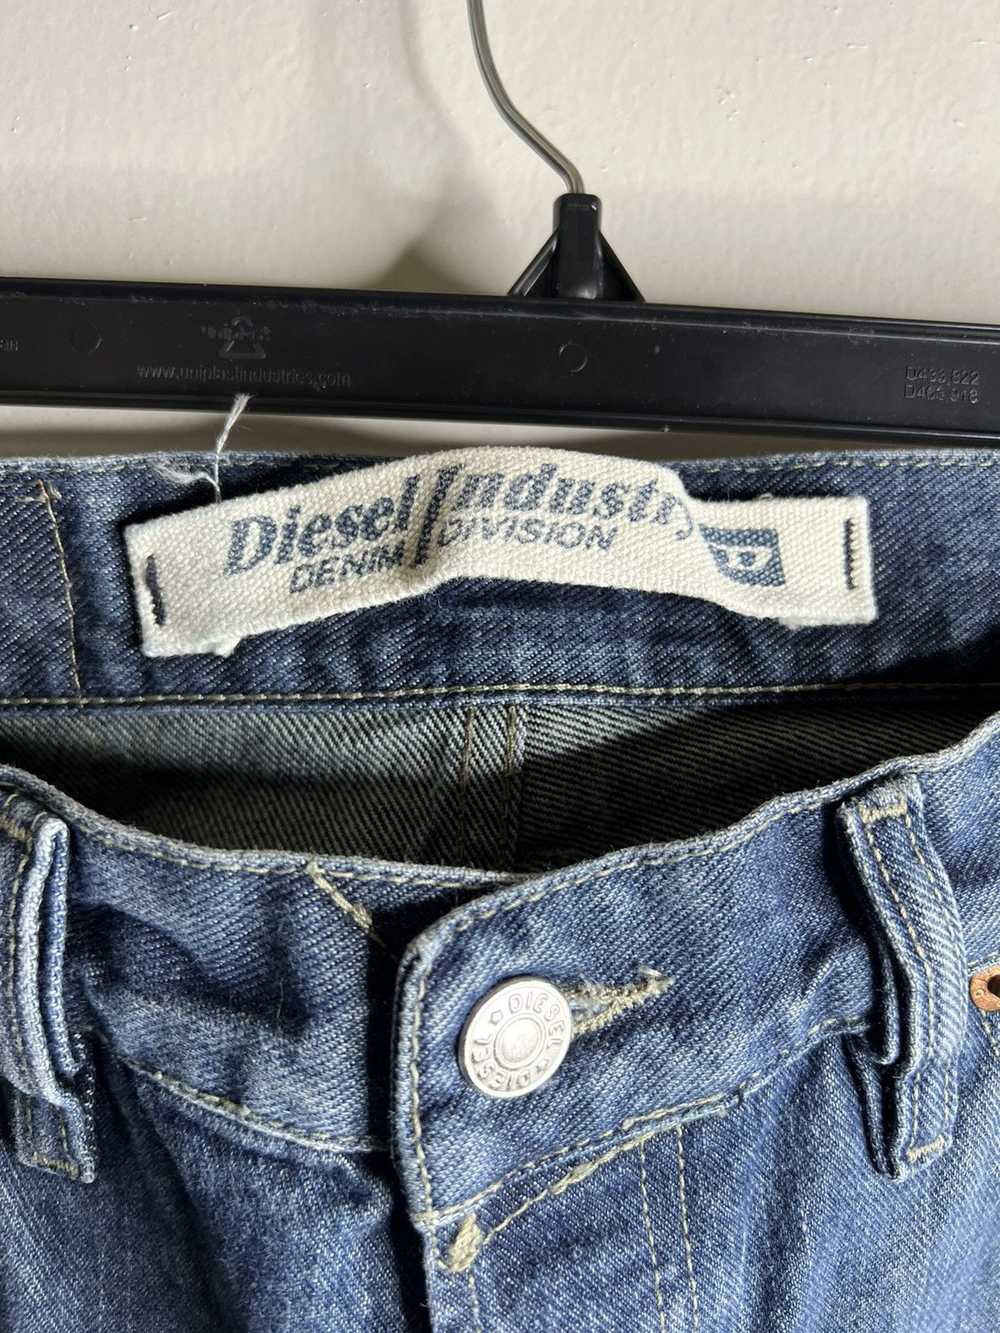 Diesel Diesel Jean Size 32 - image 3